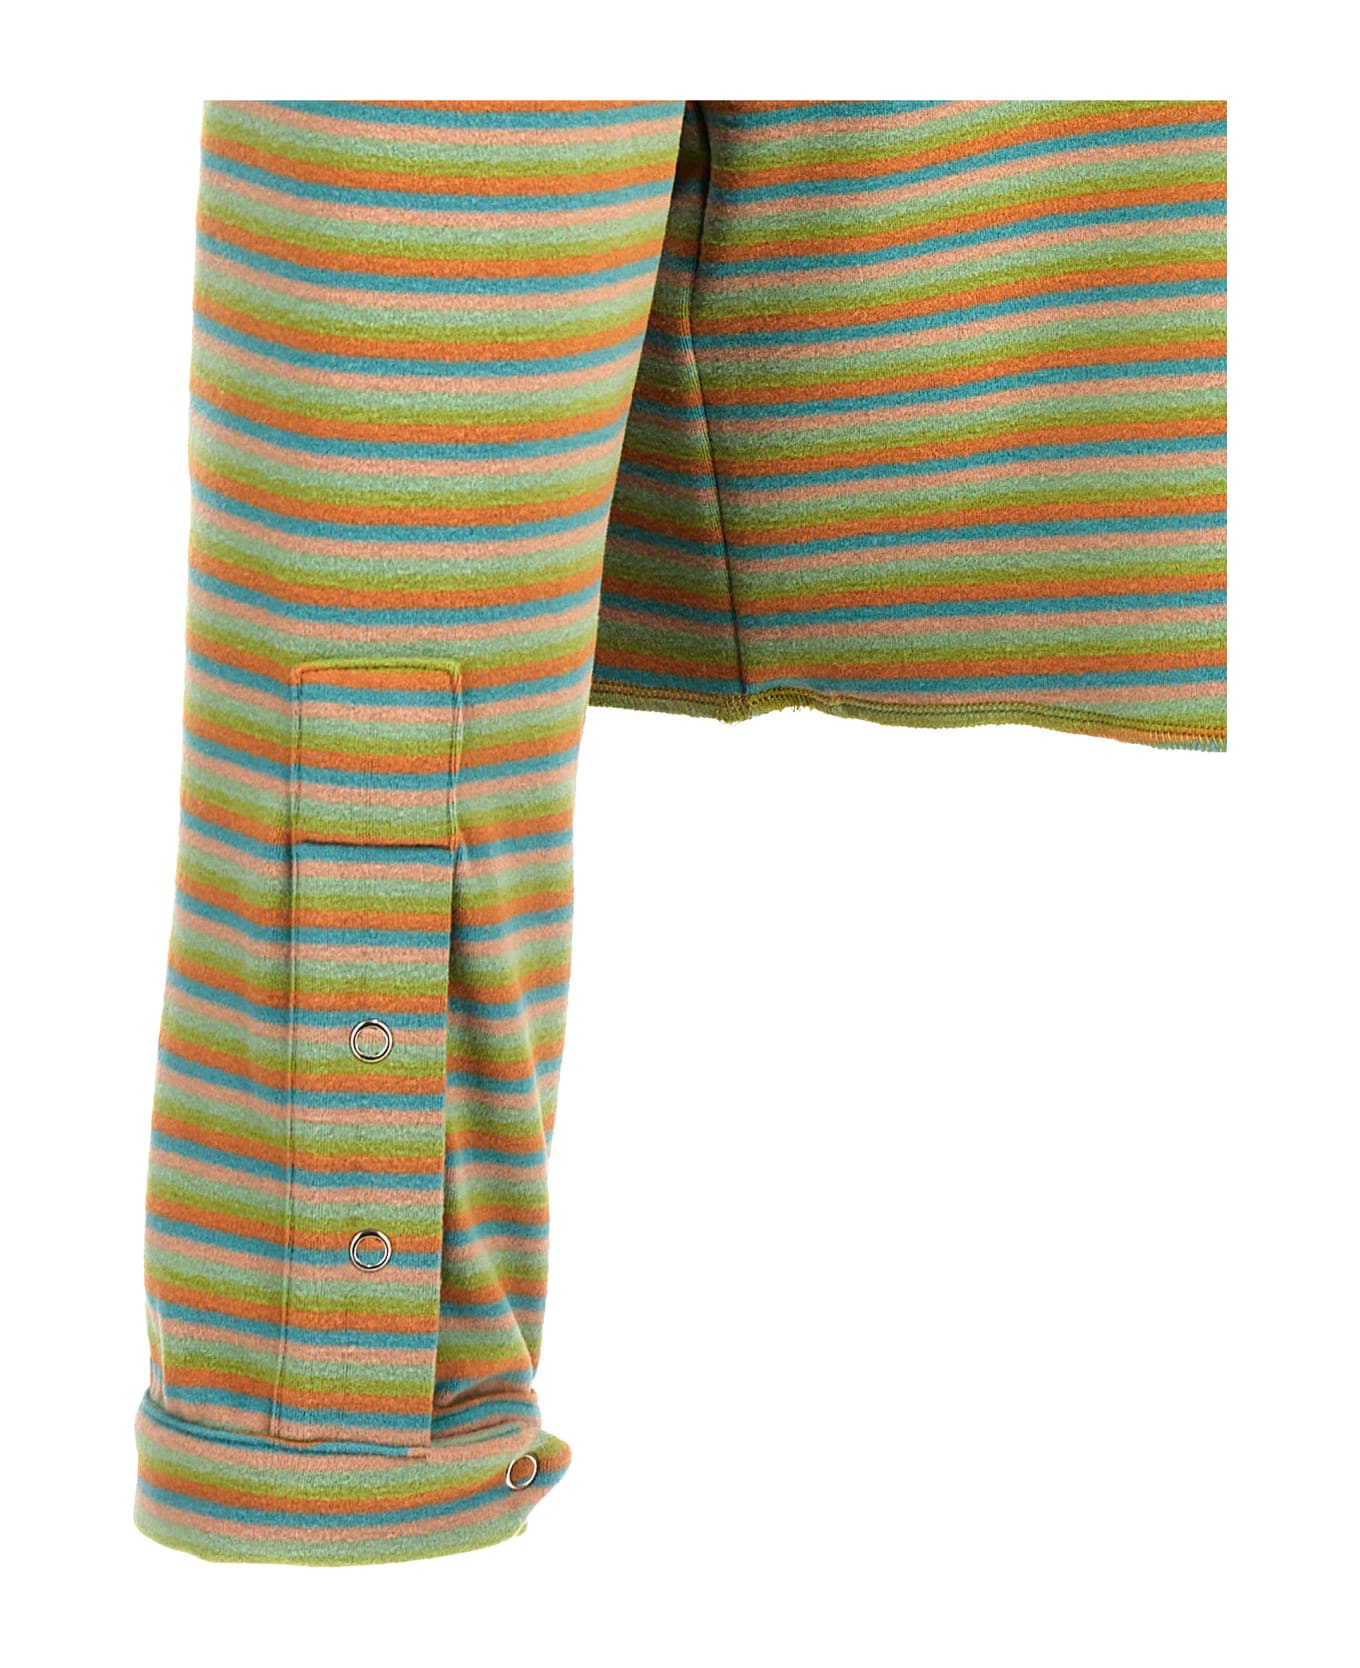 Bluemarble 'peach Skin Stripe Henley' Sweater - Multicolor ニットウェア